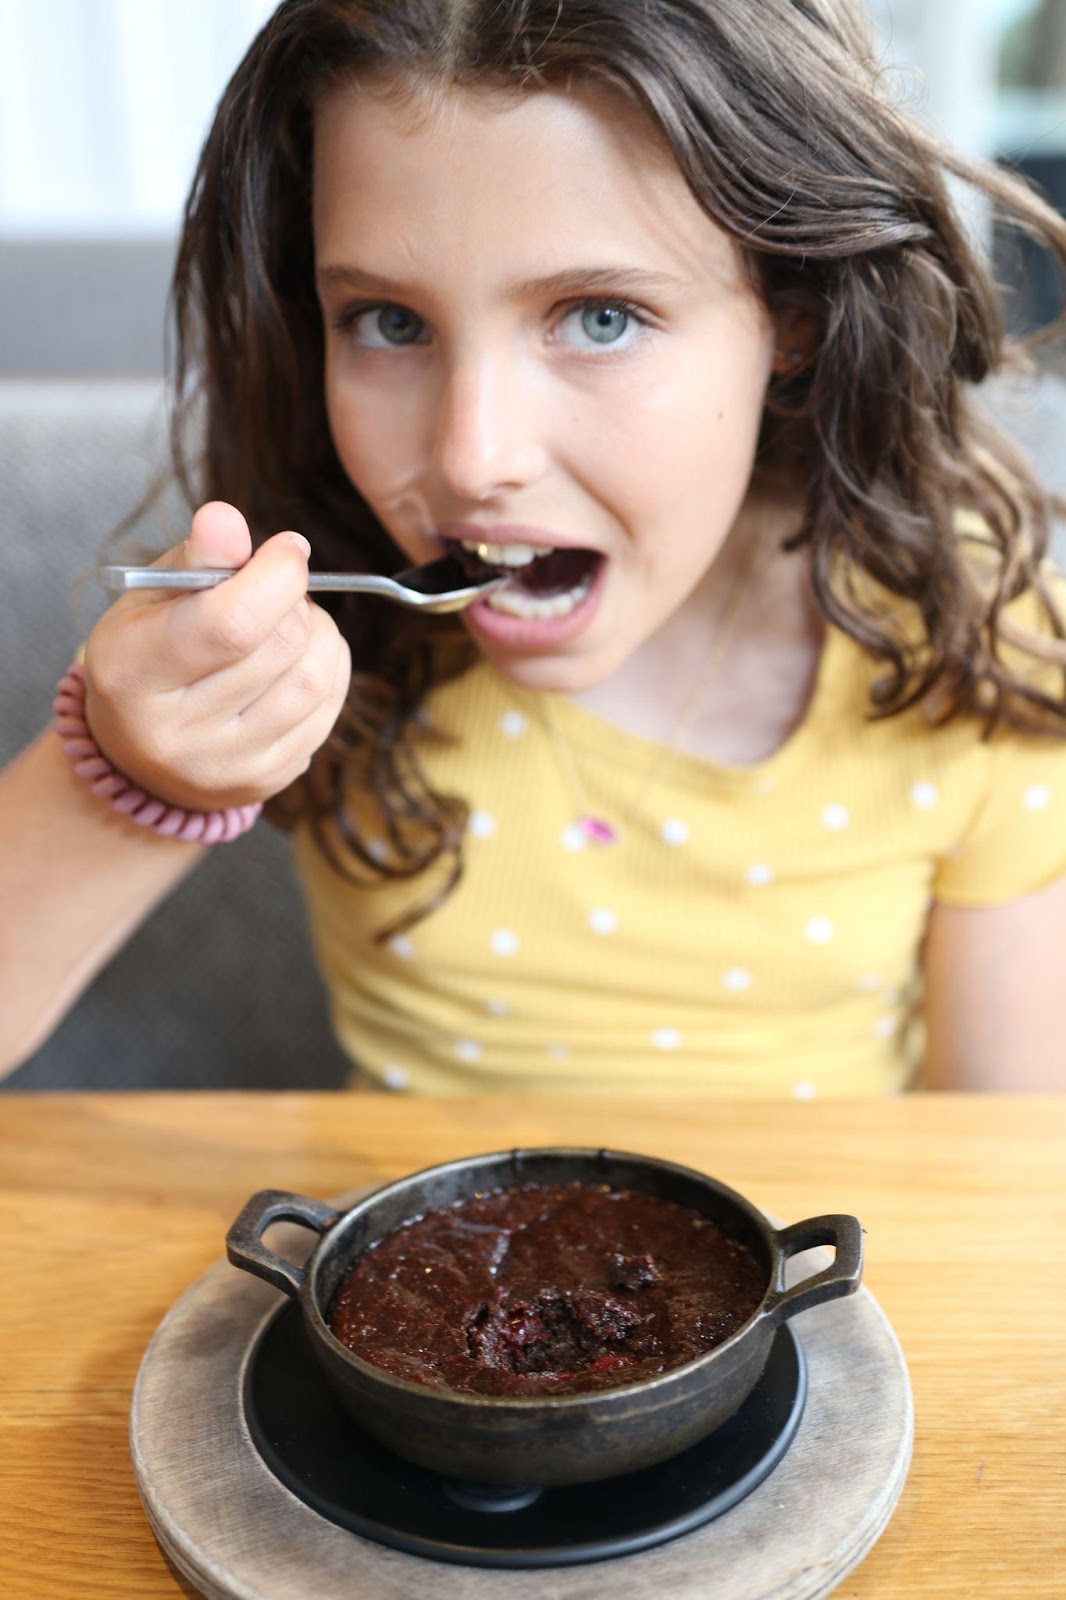 A girl eats a chocolate dessert